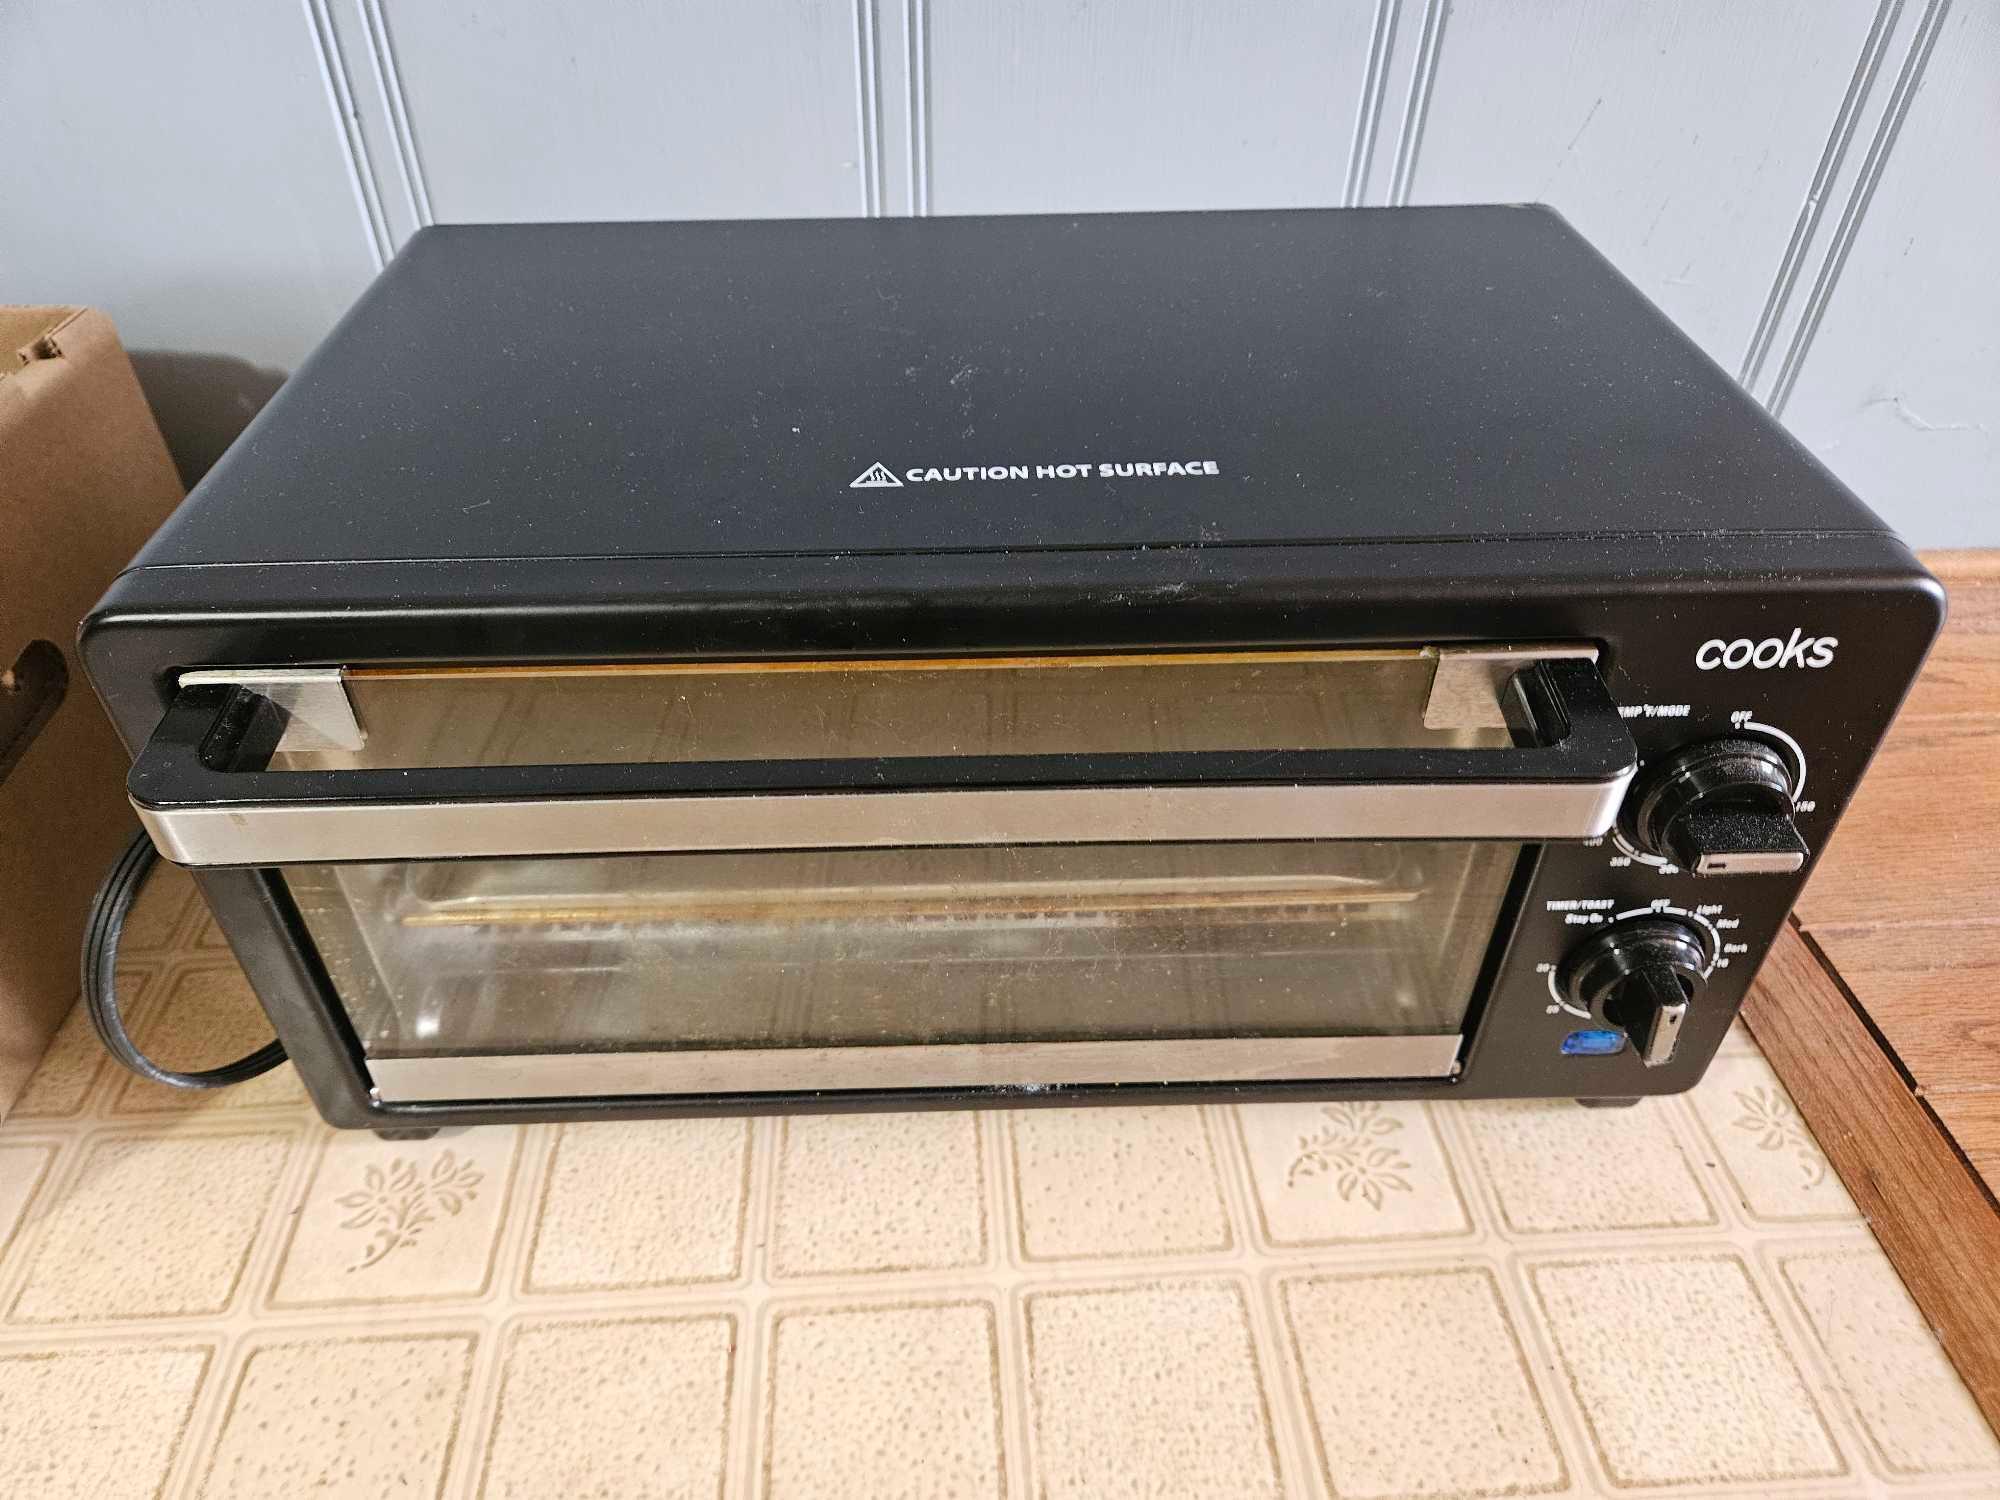 Cooks Toaster Oven, GE Blender/Processor, Oster Waffle Maker